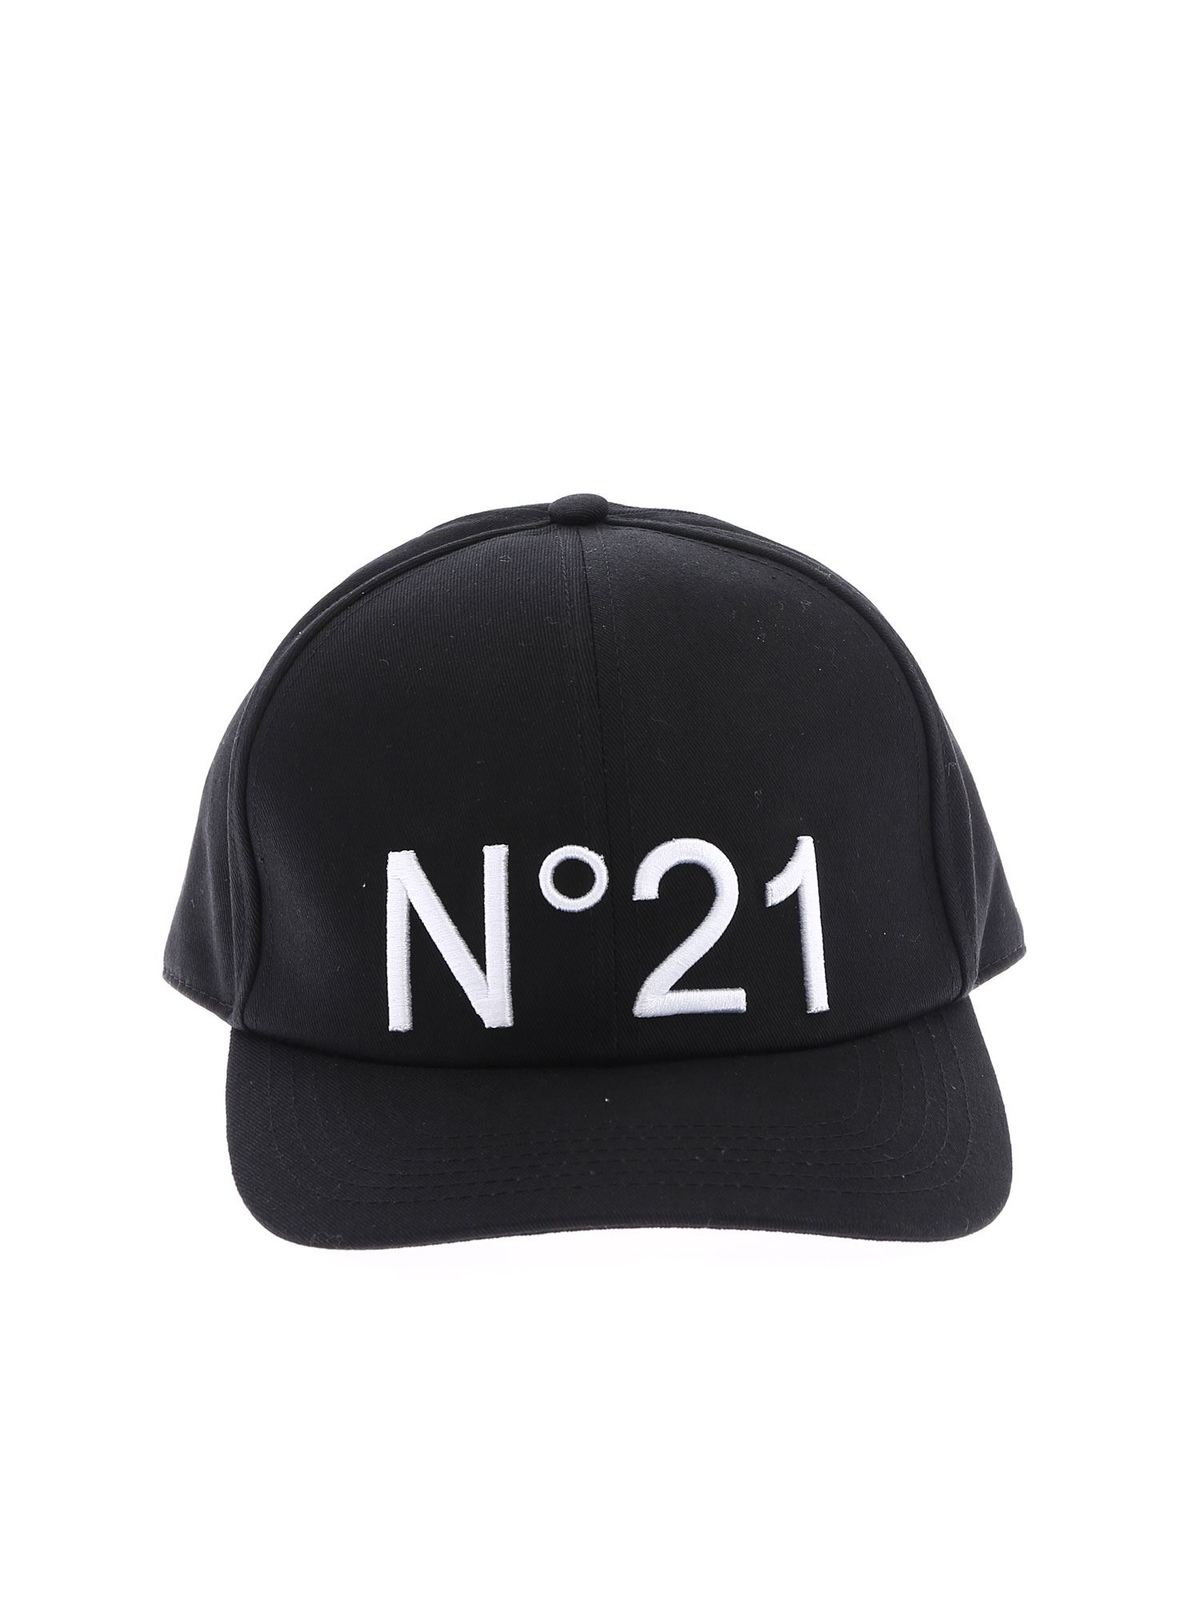 N°21 N  21  EMBROIDERED CAP IN BLACK